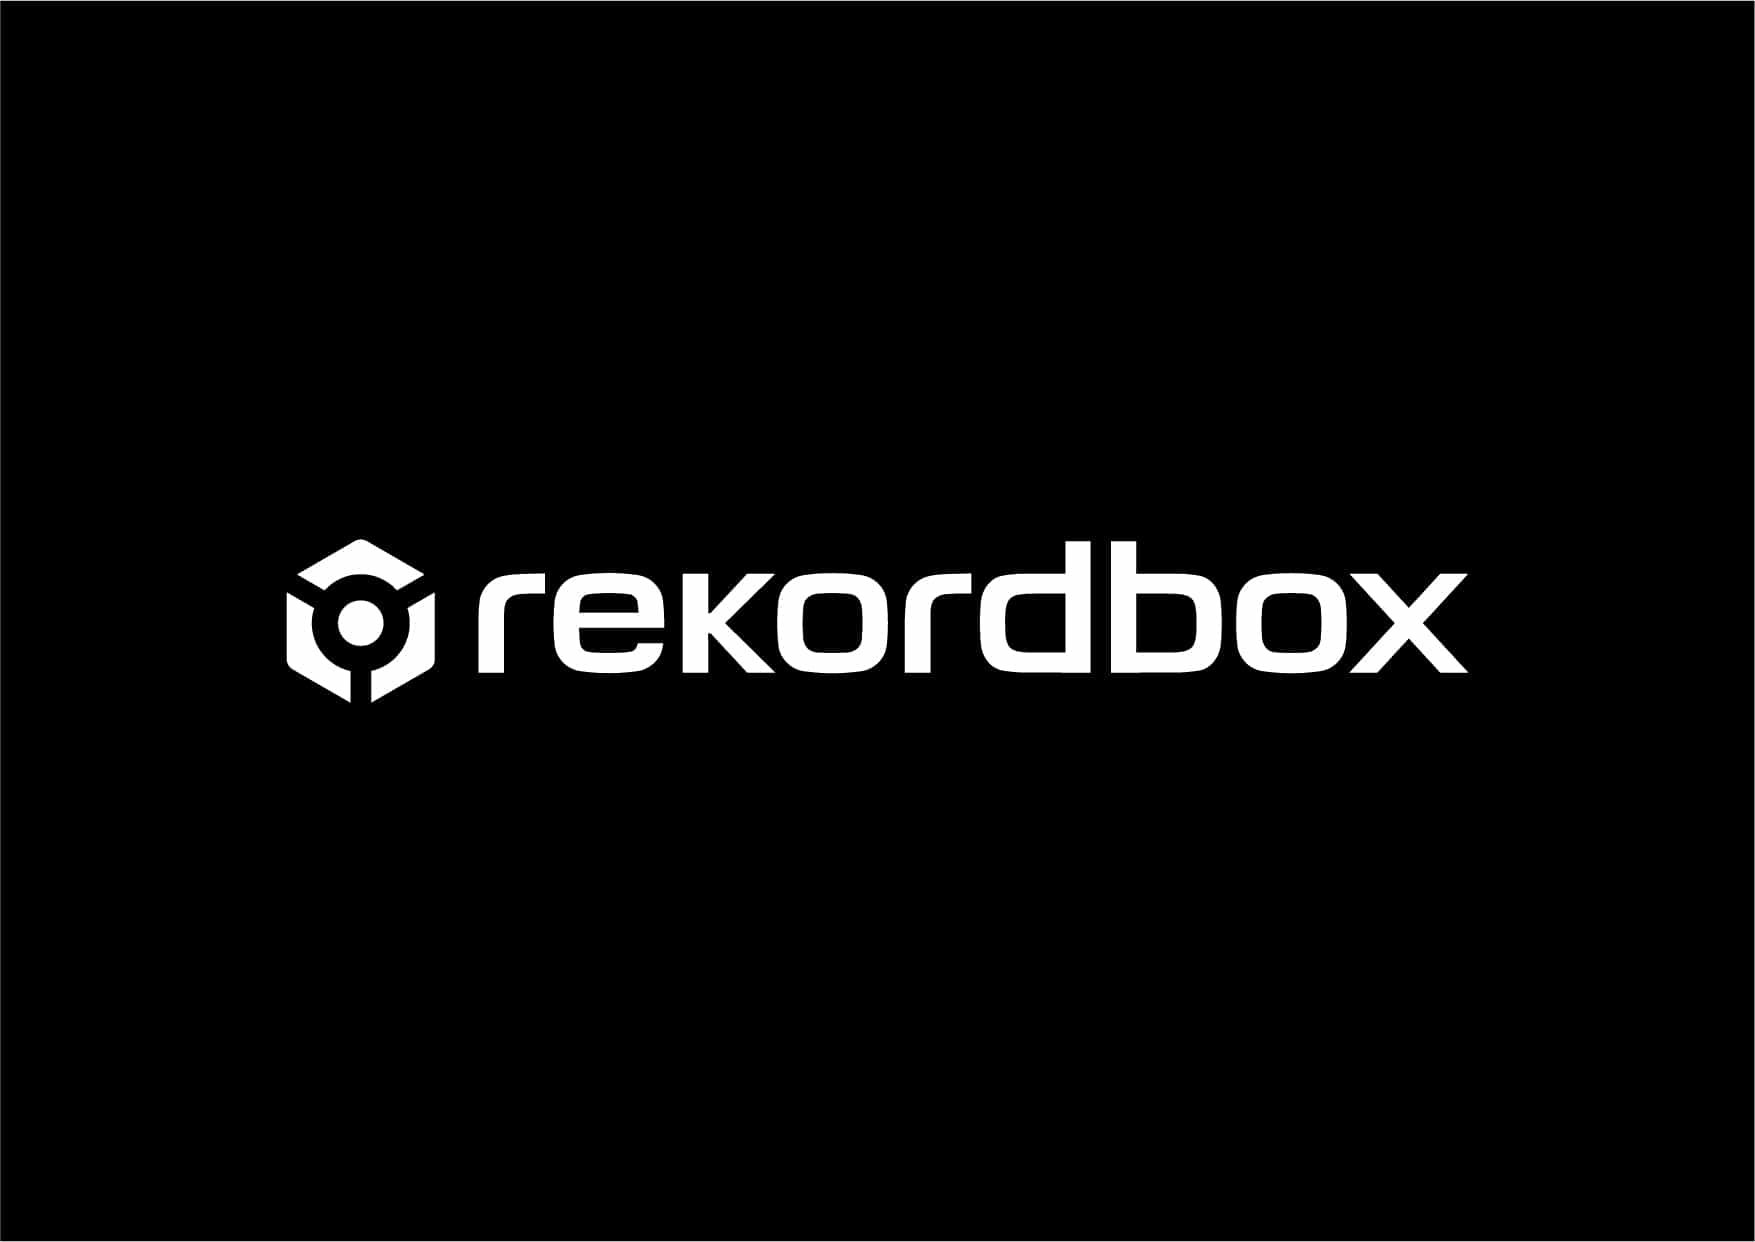 Rekordbox v6 - ¿Un paso hacia el futuro? 1